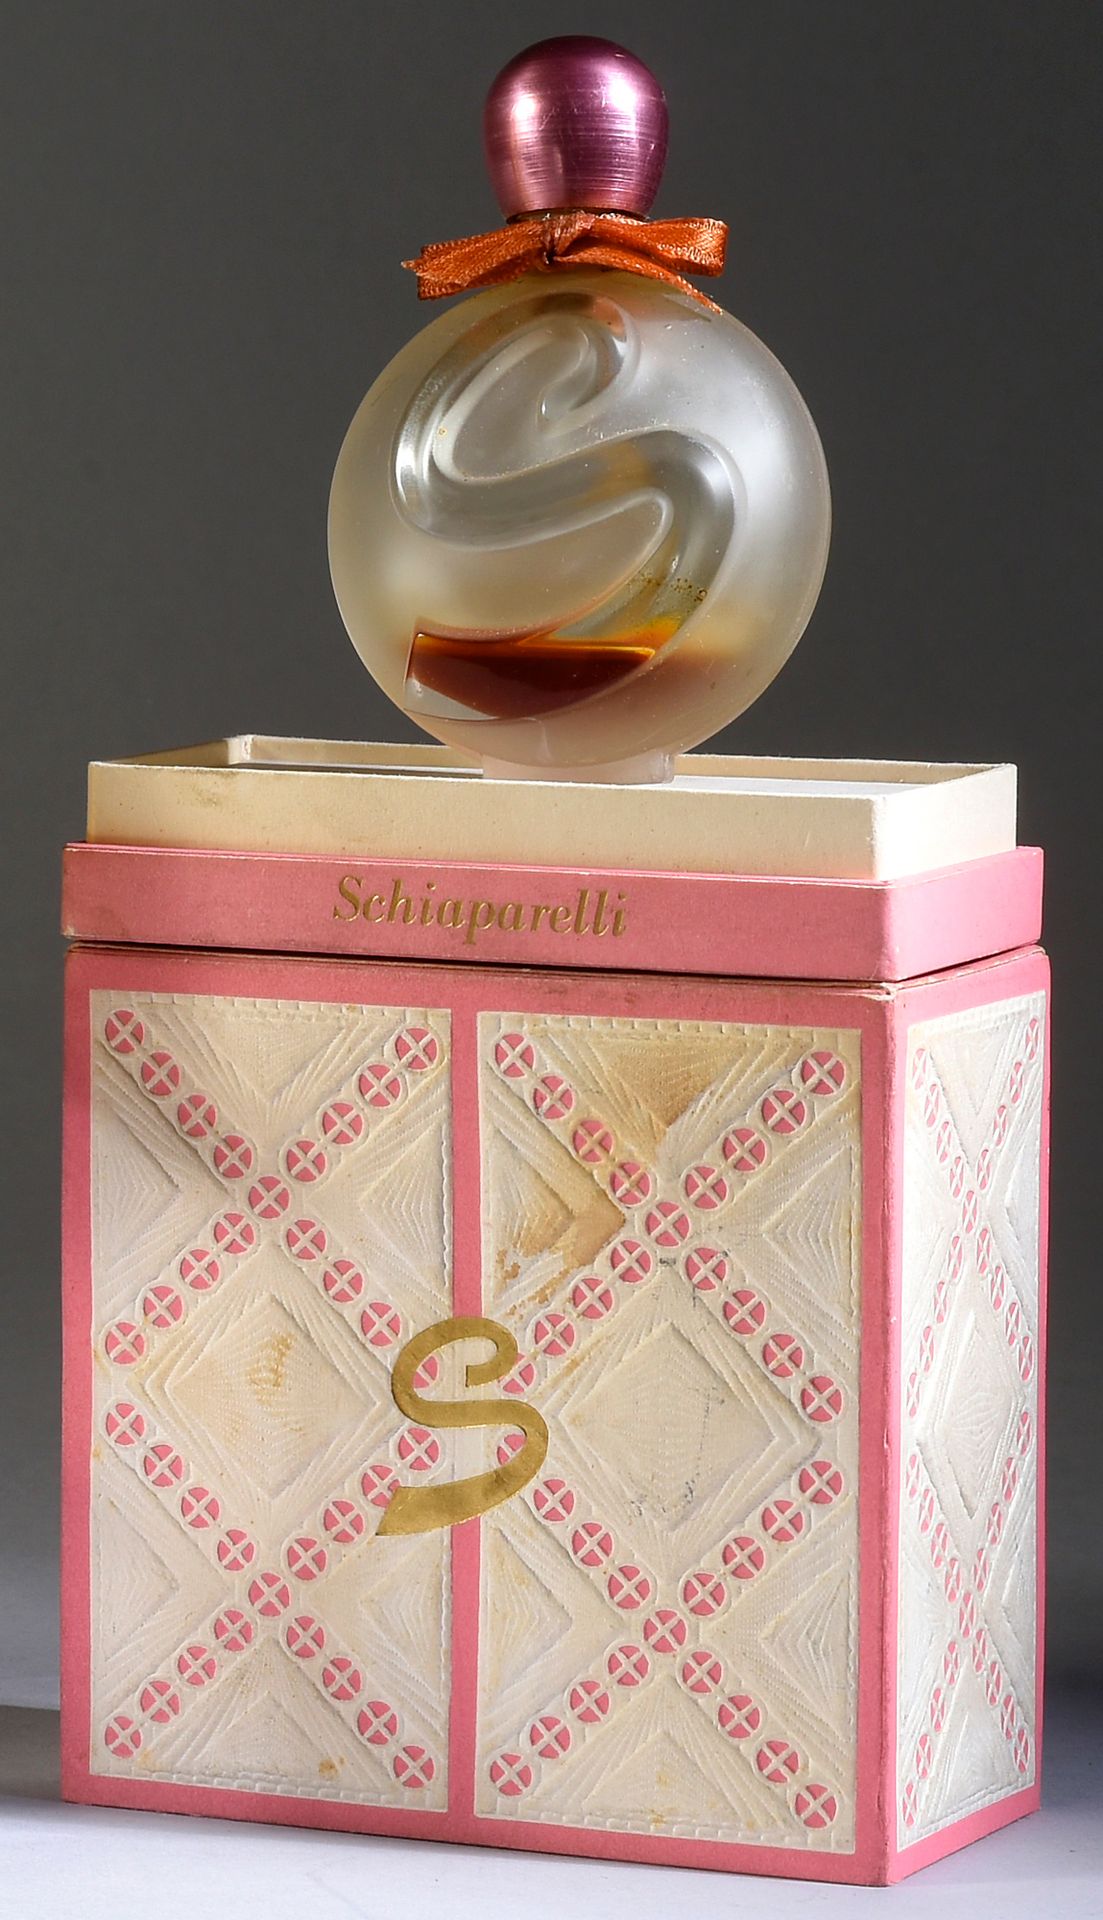 Schiaparelli - «S» - (1961) 
Presentata nella sua scatola di cartone ricoperta d&hellip;